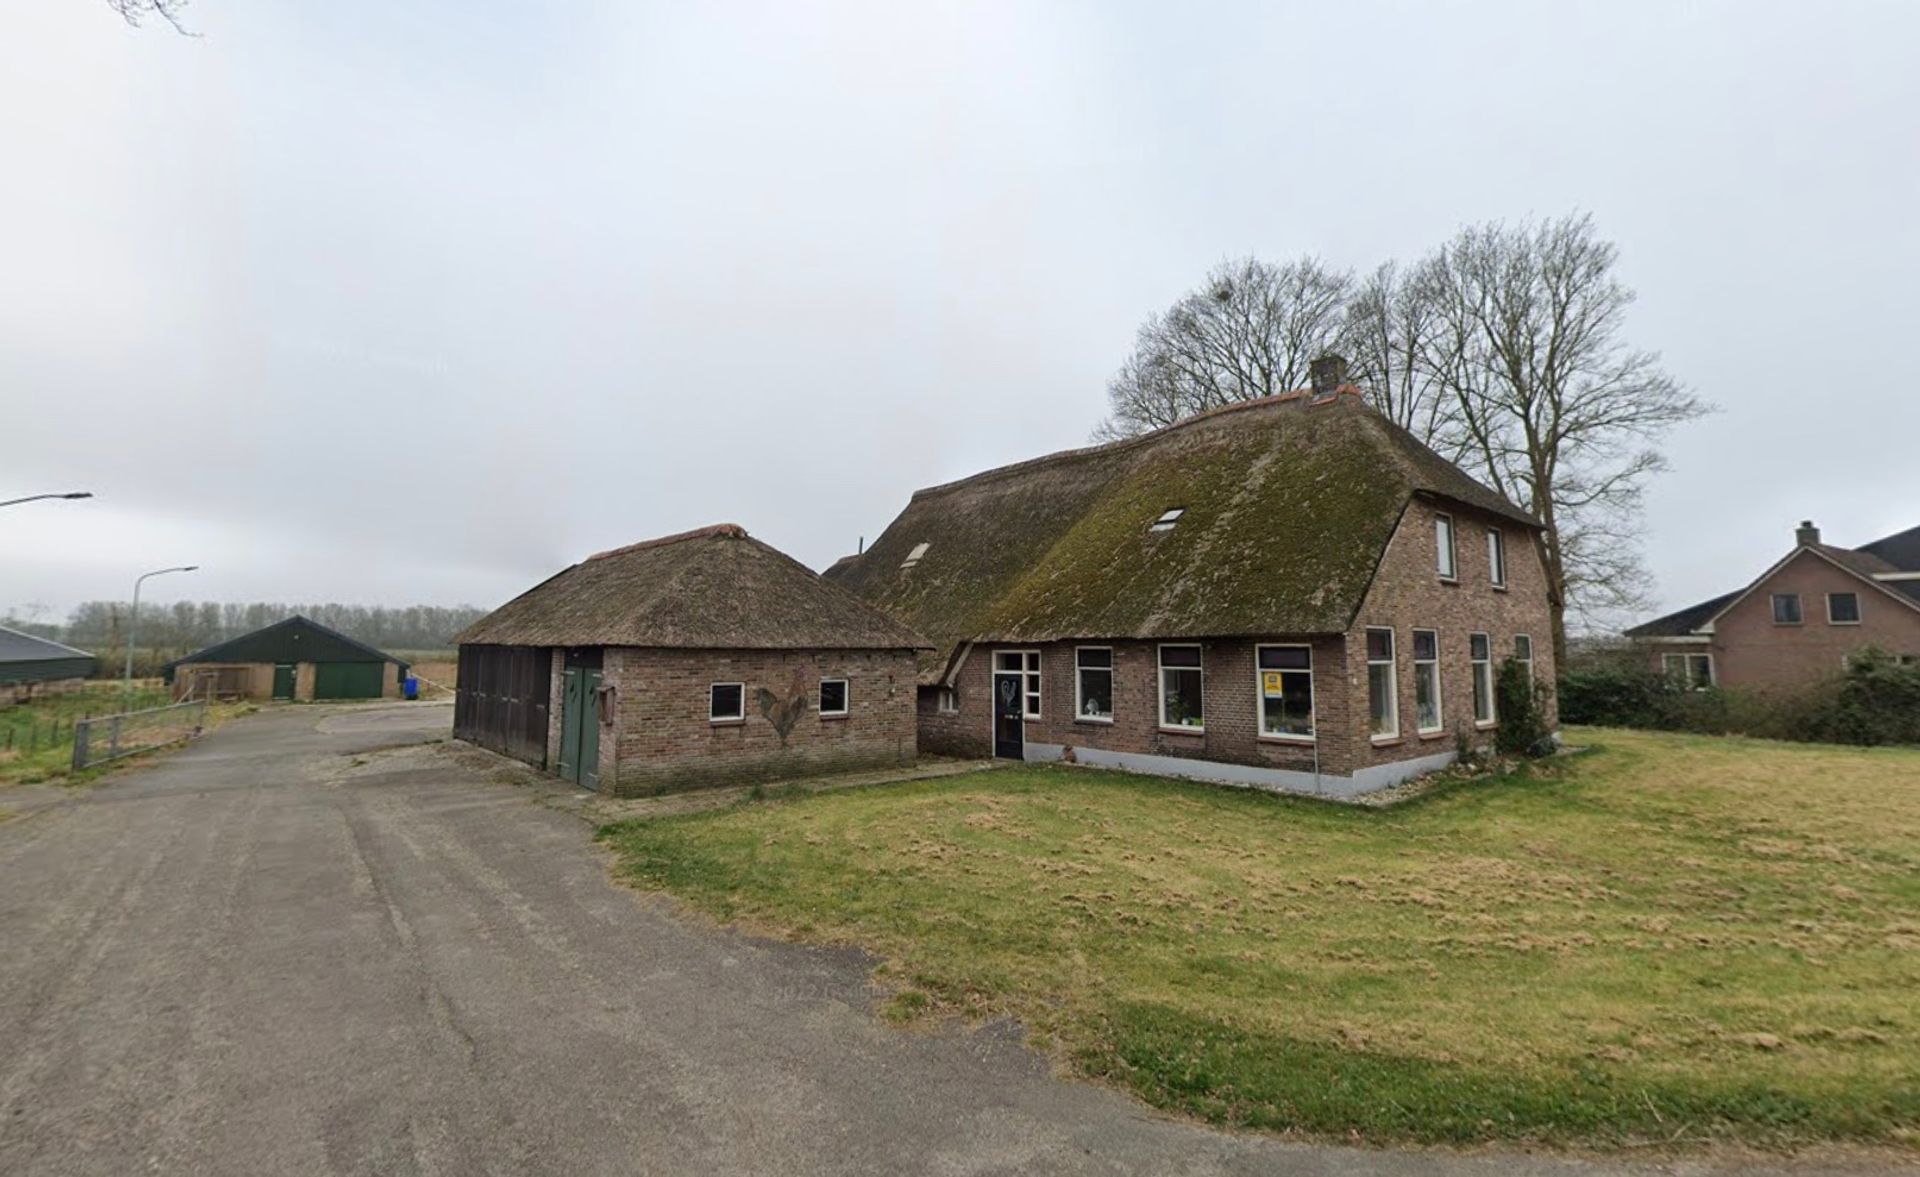 vonk Stoel Sandy Noord-Brabant koopt boerderijen in andere provincies op om ze vervolgens  stil te leggen - Joop - BNNVARA